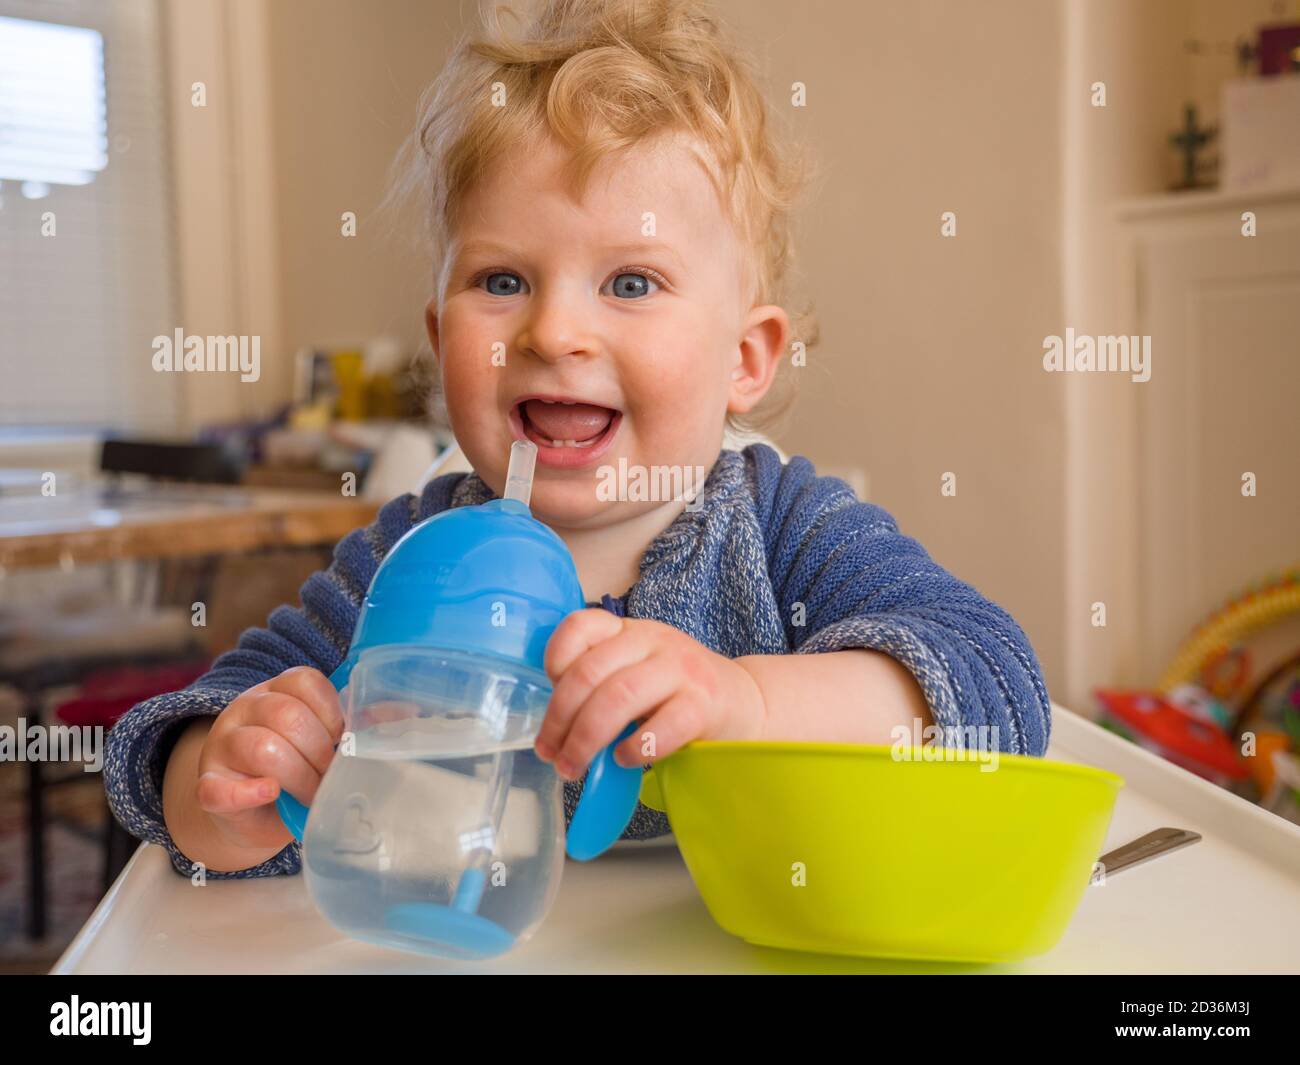 Bébé garçon d'un an heureux qui boit de l'eau tout en mangeant Banque D'Images